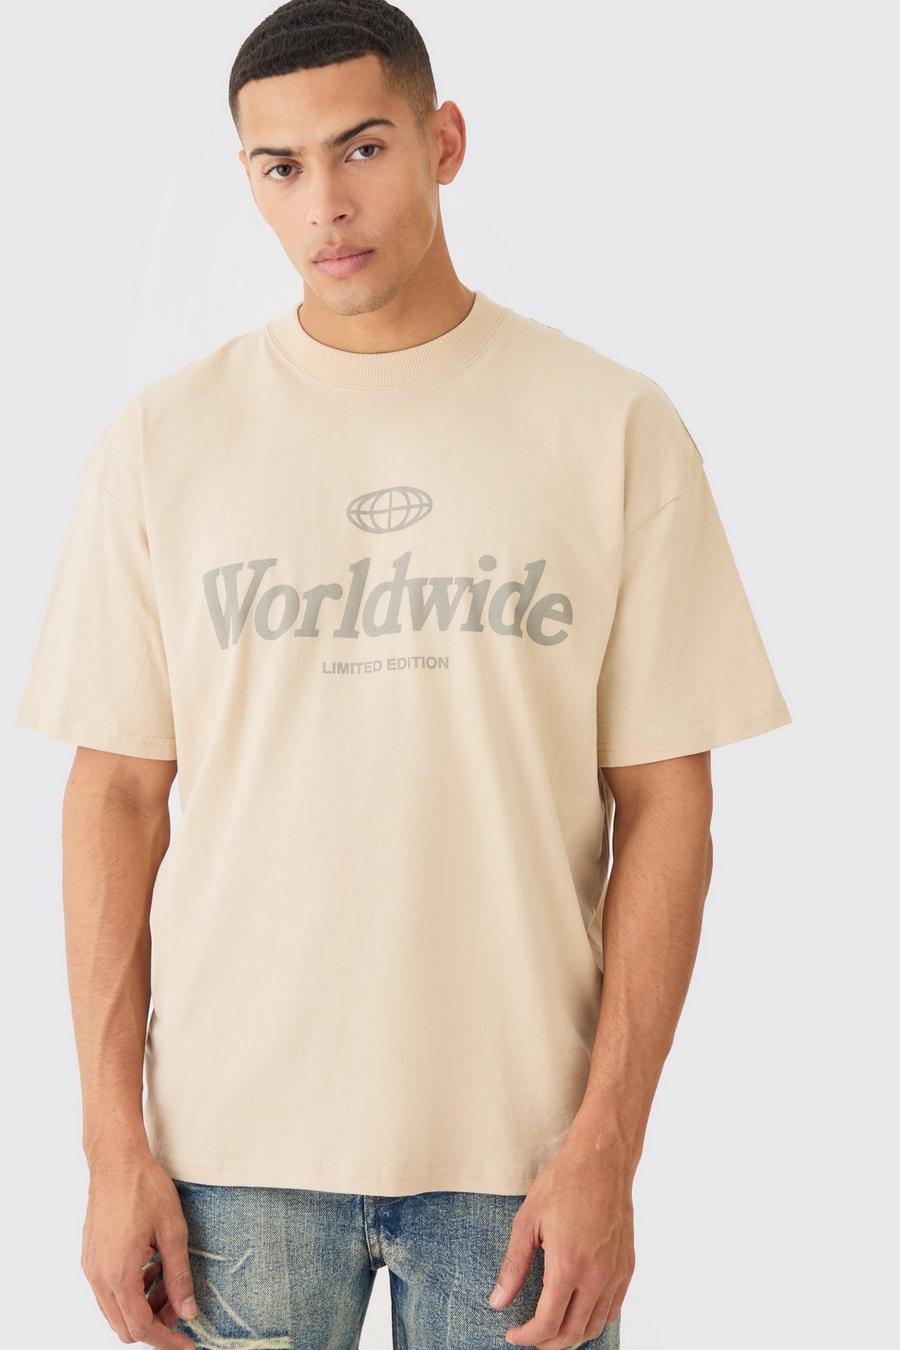 T-Shirt in Übergröße mit Worldwide-Print, Sand image number 1